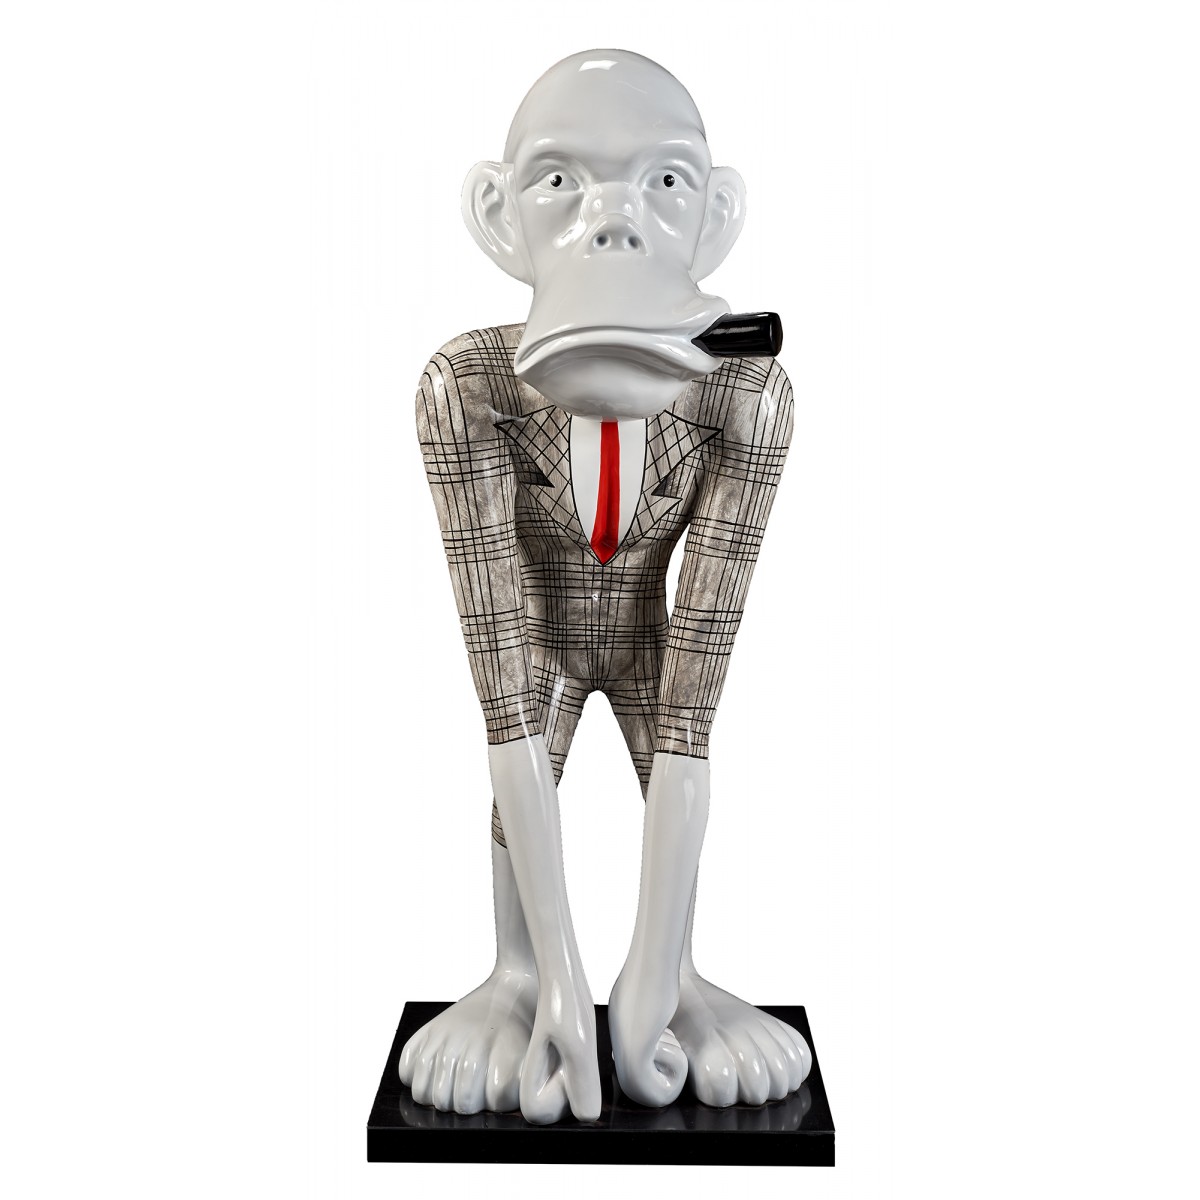 Ovoboutique - Grande statue 🤩 de singe 🐒 (chimpanzé) en résine modèle -  MOTOGP - le tout couvert par une couche protectrice brillante 🤩 . Vous en  pensez quoi les amis ??